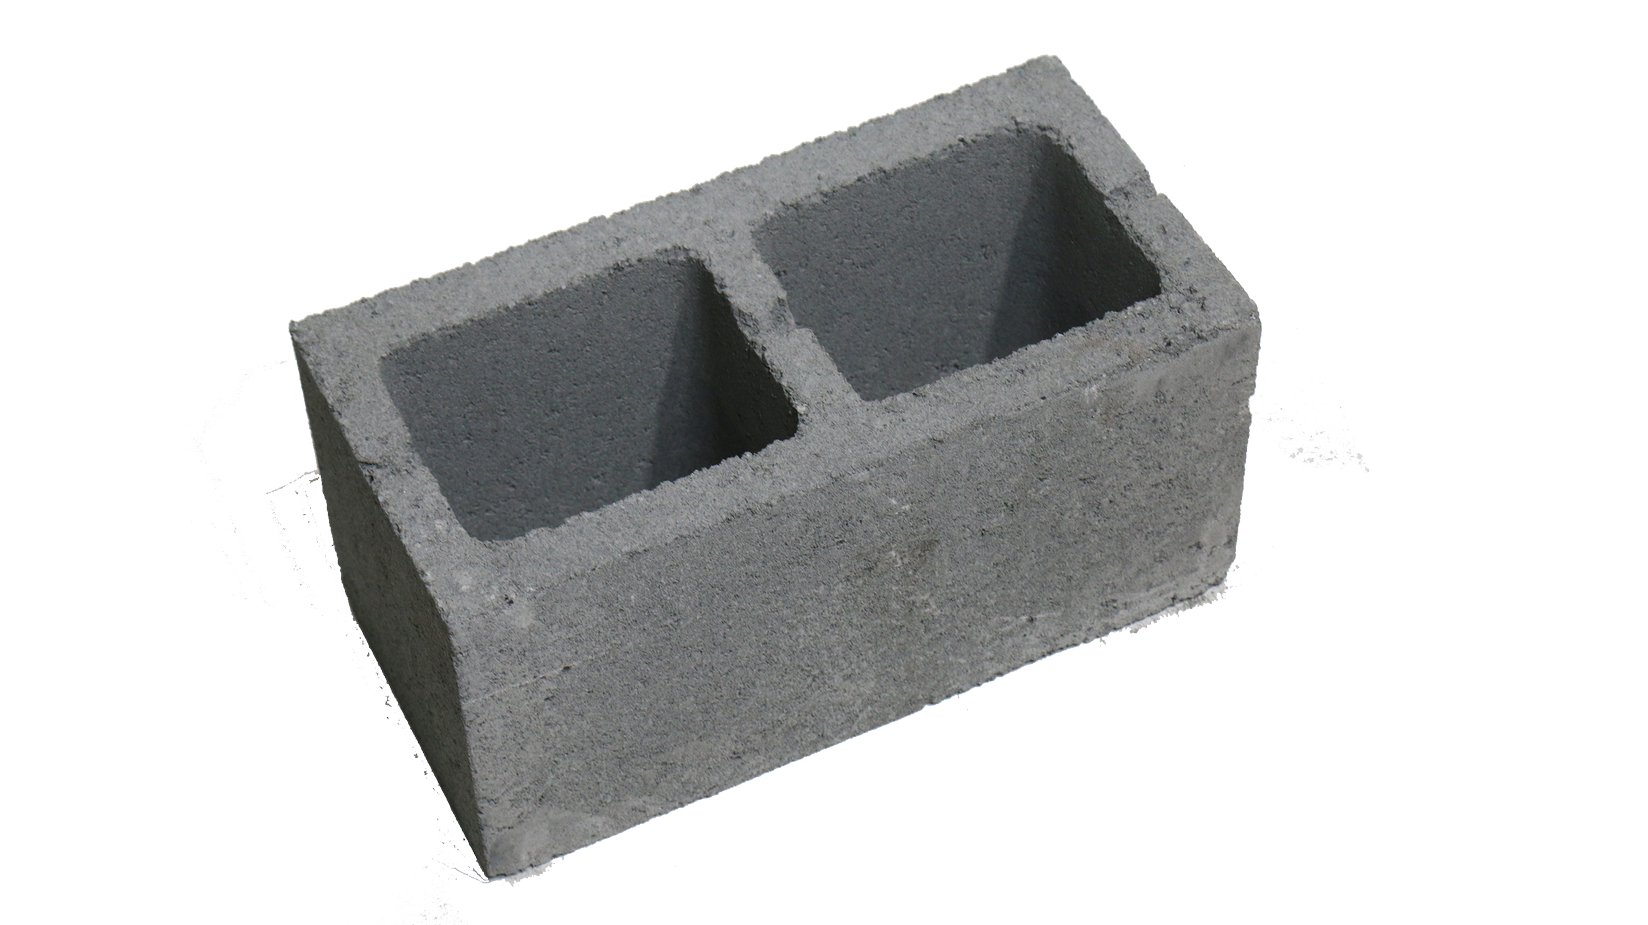 8in x 8in x 16in NW CMU Block - Building Materials